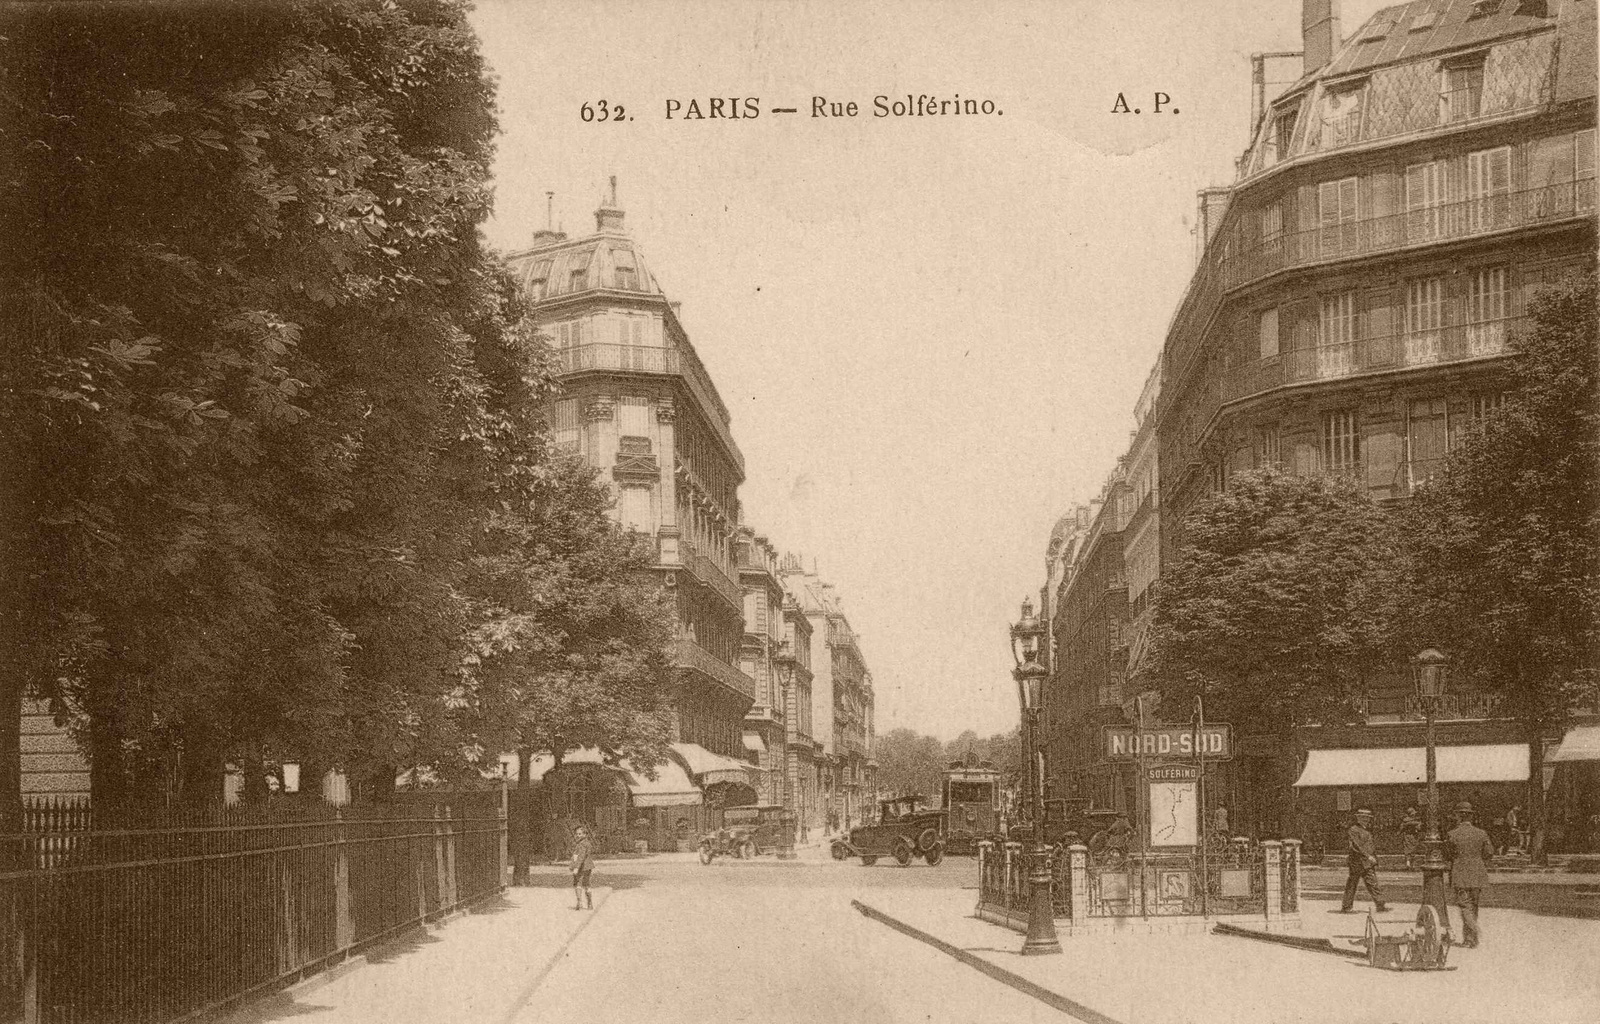 632. Paris - Rue Solferino